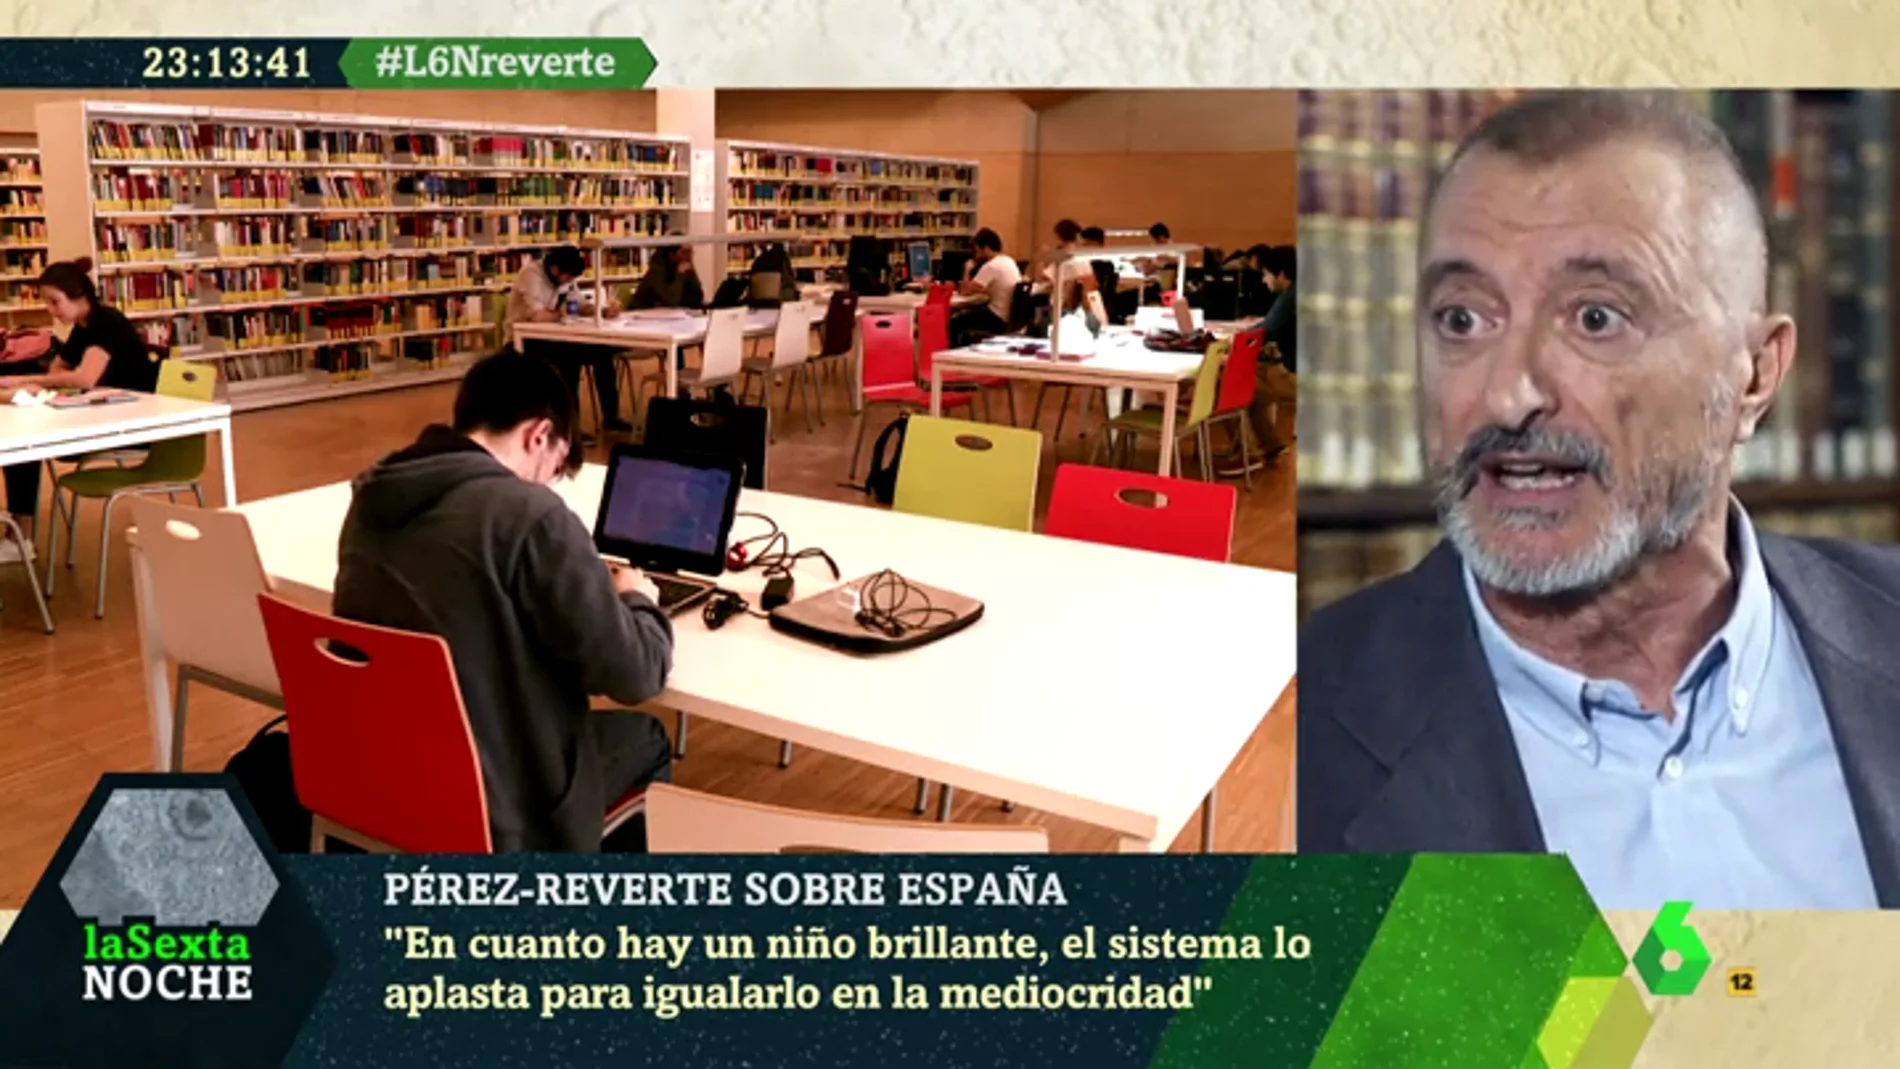 Arturo Pérez-Reverte: "Los colegios españoles son ahora lugares para aplastar la inteligencia e igualarla en la mediocridad"